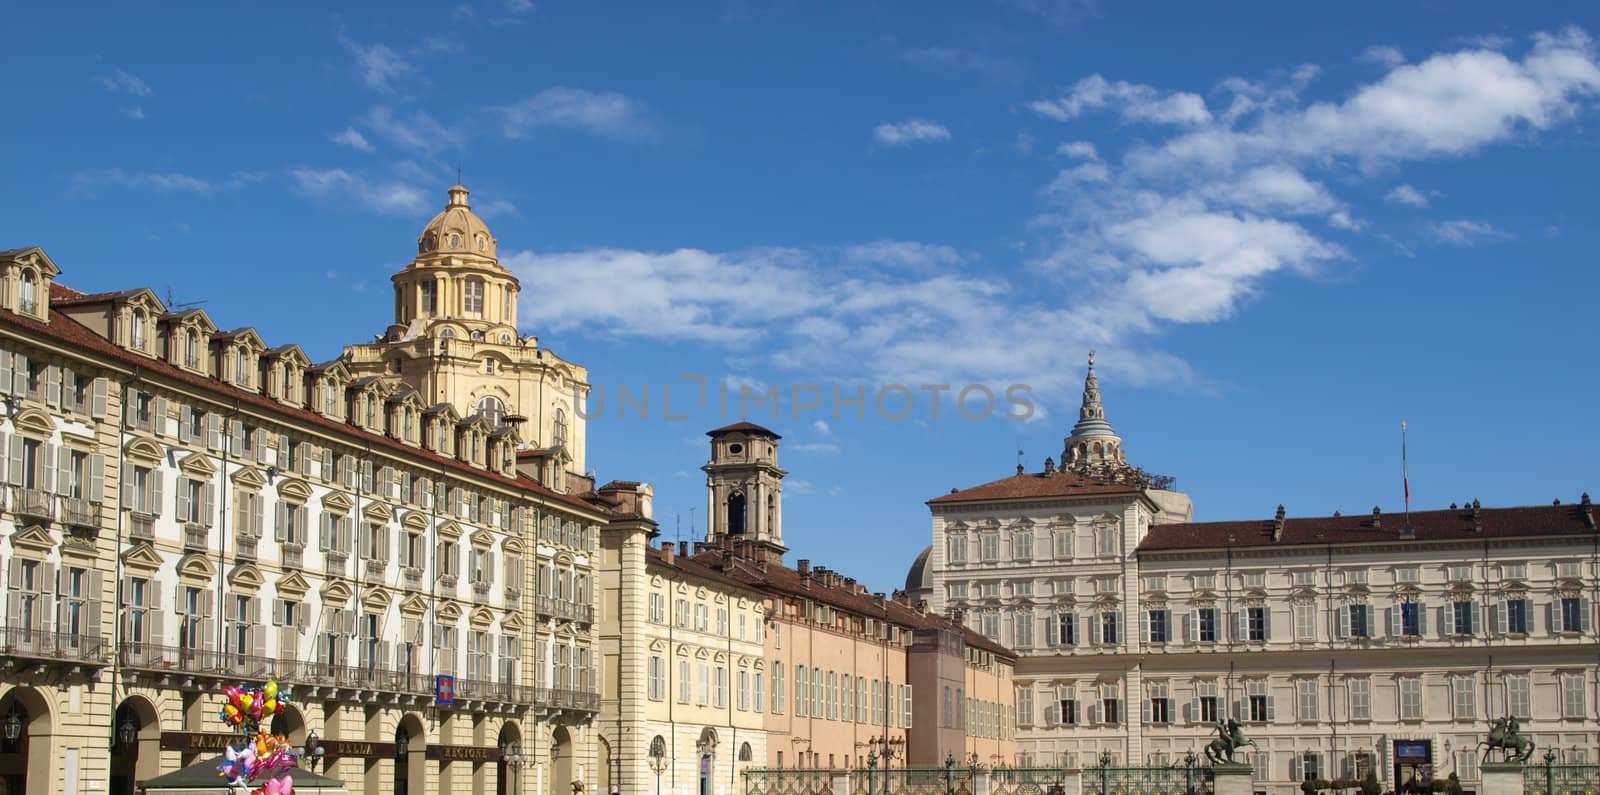 Piazza Castello, central baroque square in Turin, Italy